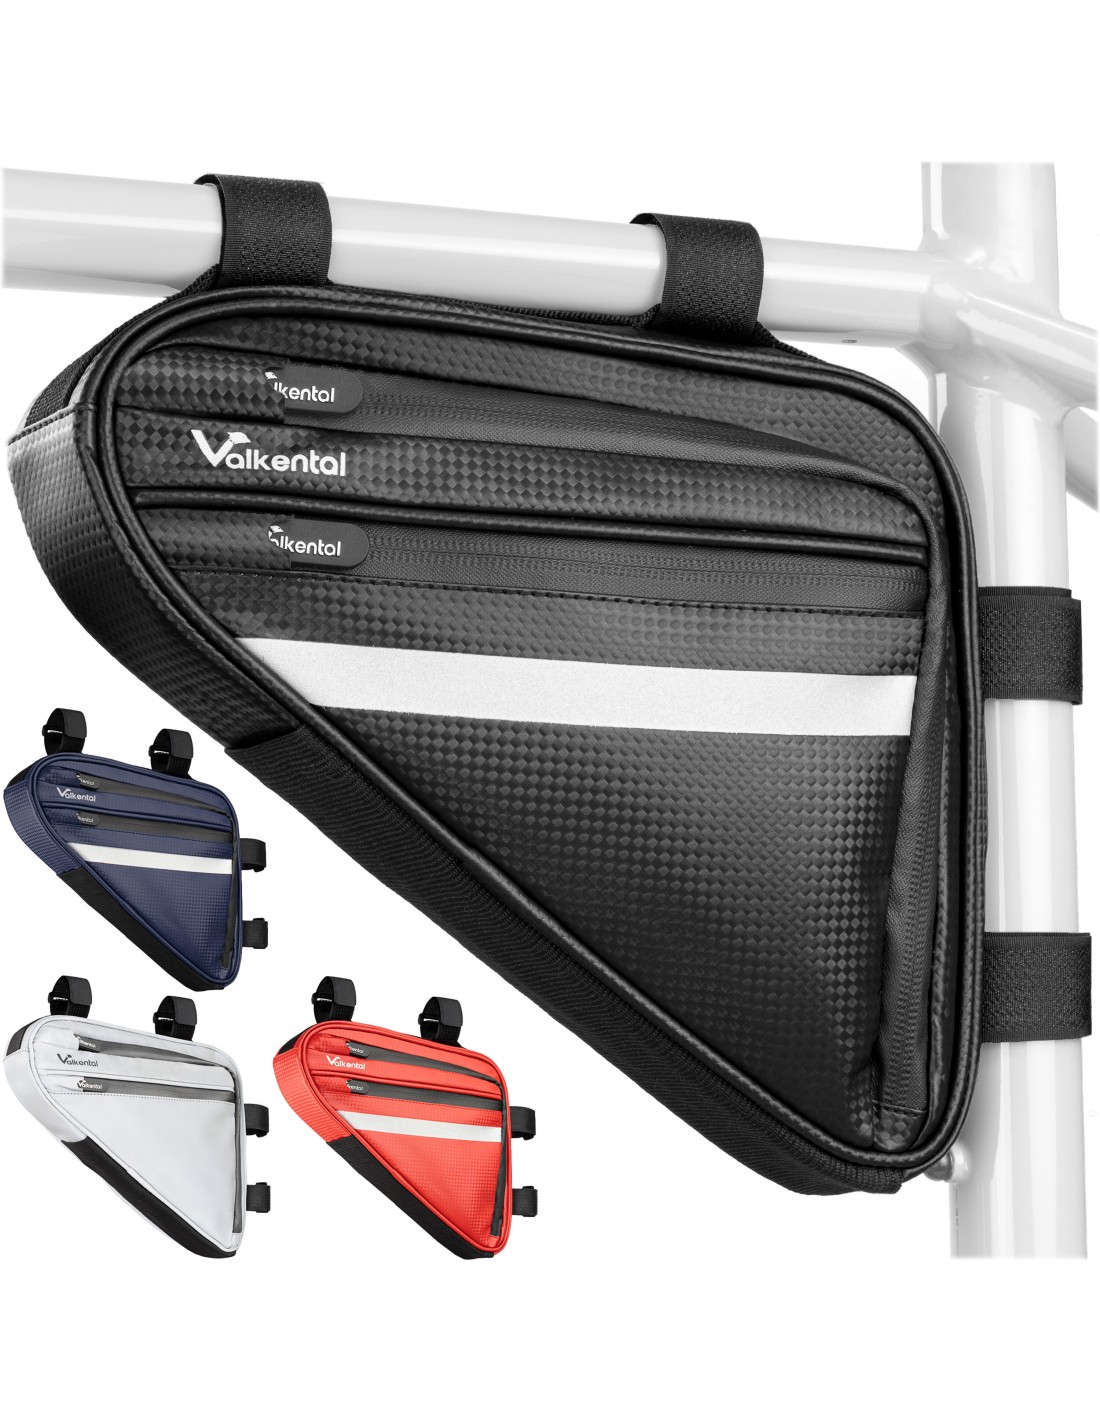 Valkental Triangel Bag - Praktische Rahmentasche mit viel Platz, schwarz Taschenvariante - Rahmentasche, von Valkental